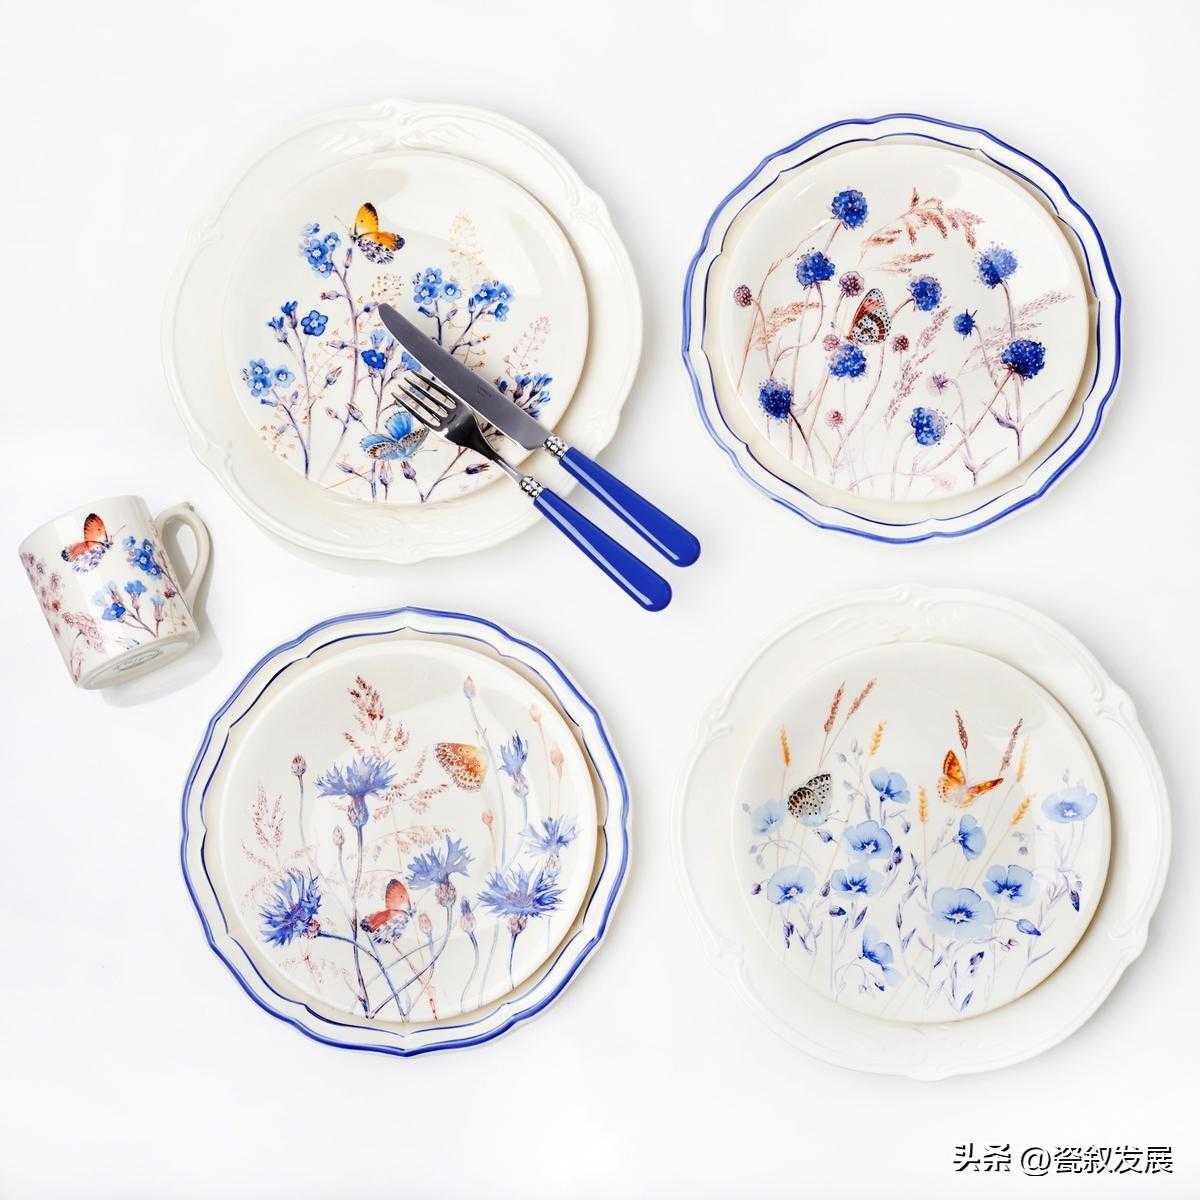 法国高端手工彩陶制造商Gien出品的奢华餐具-天蓝“Azur”系列